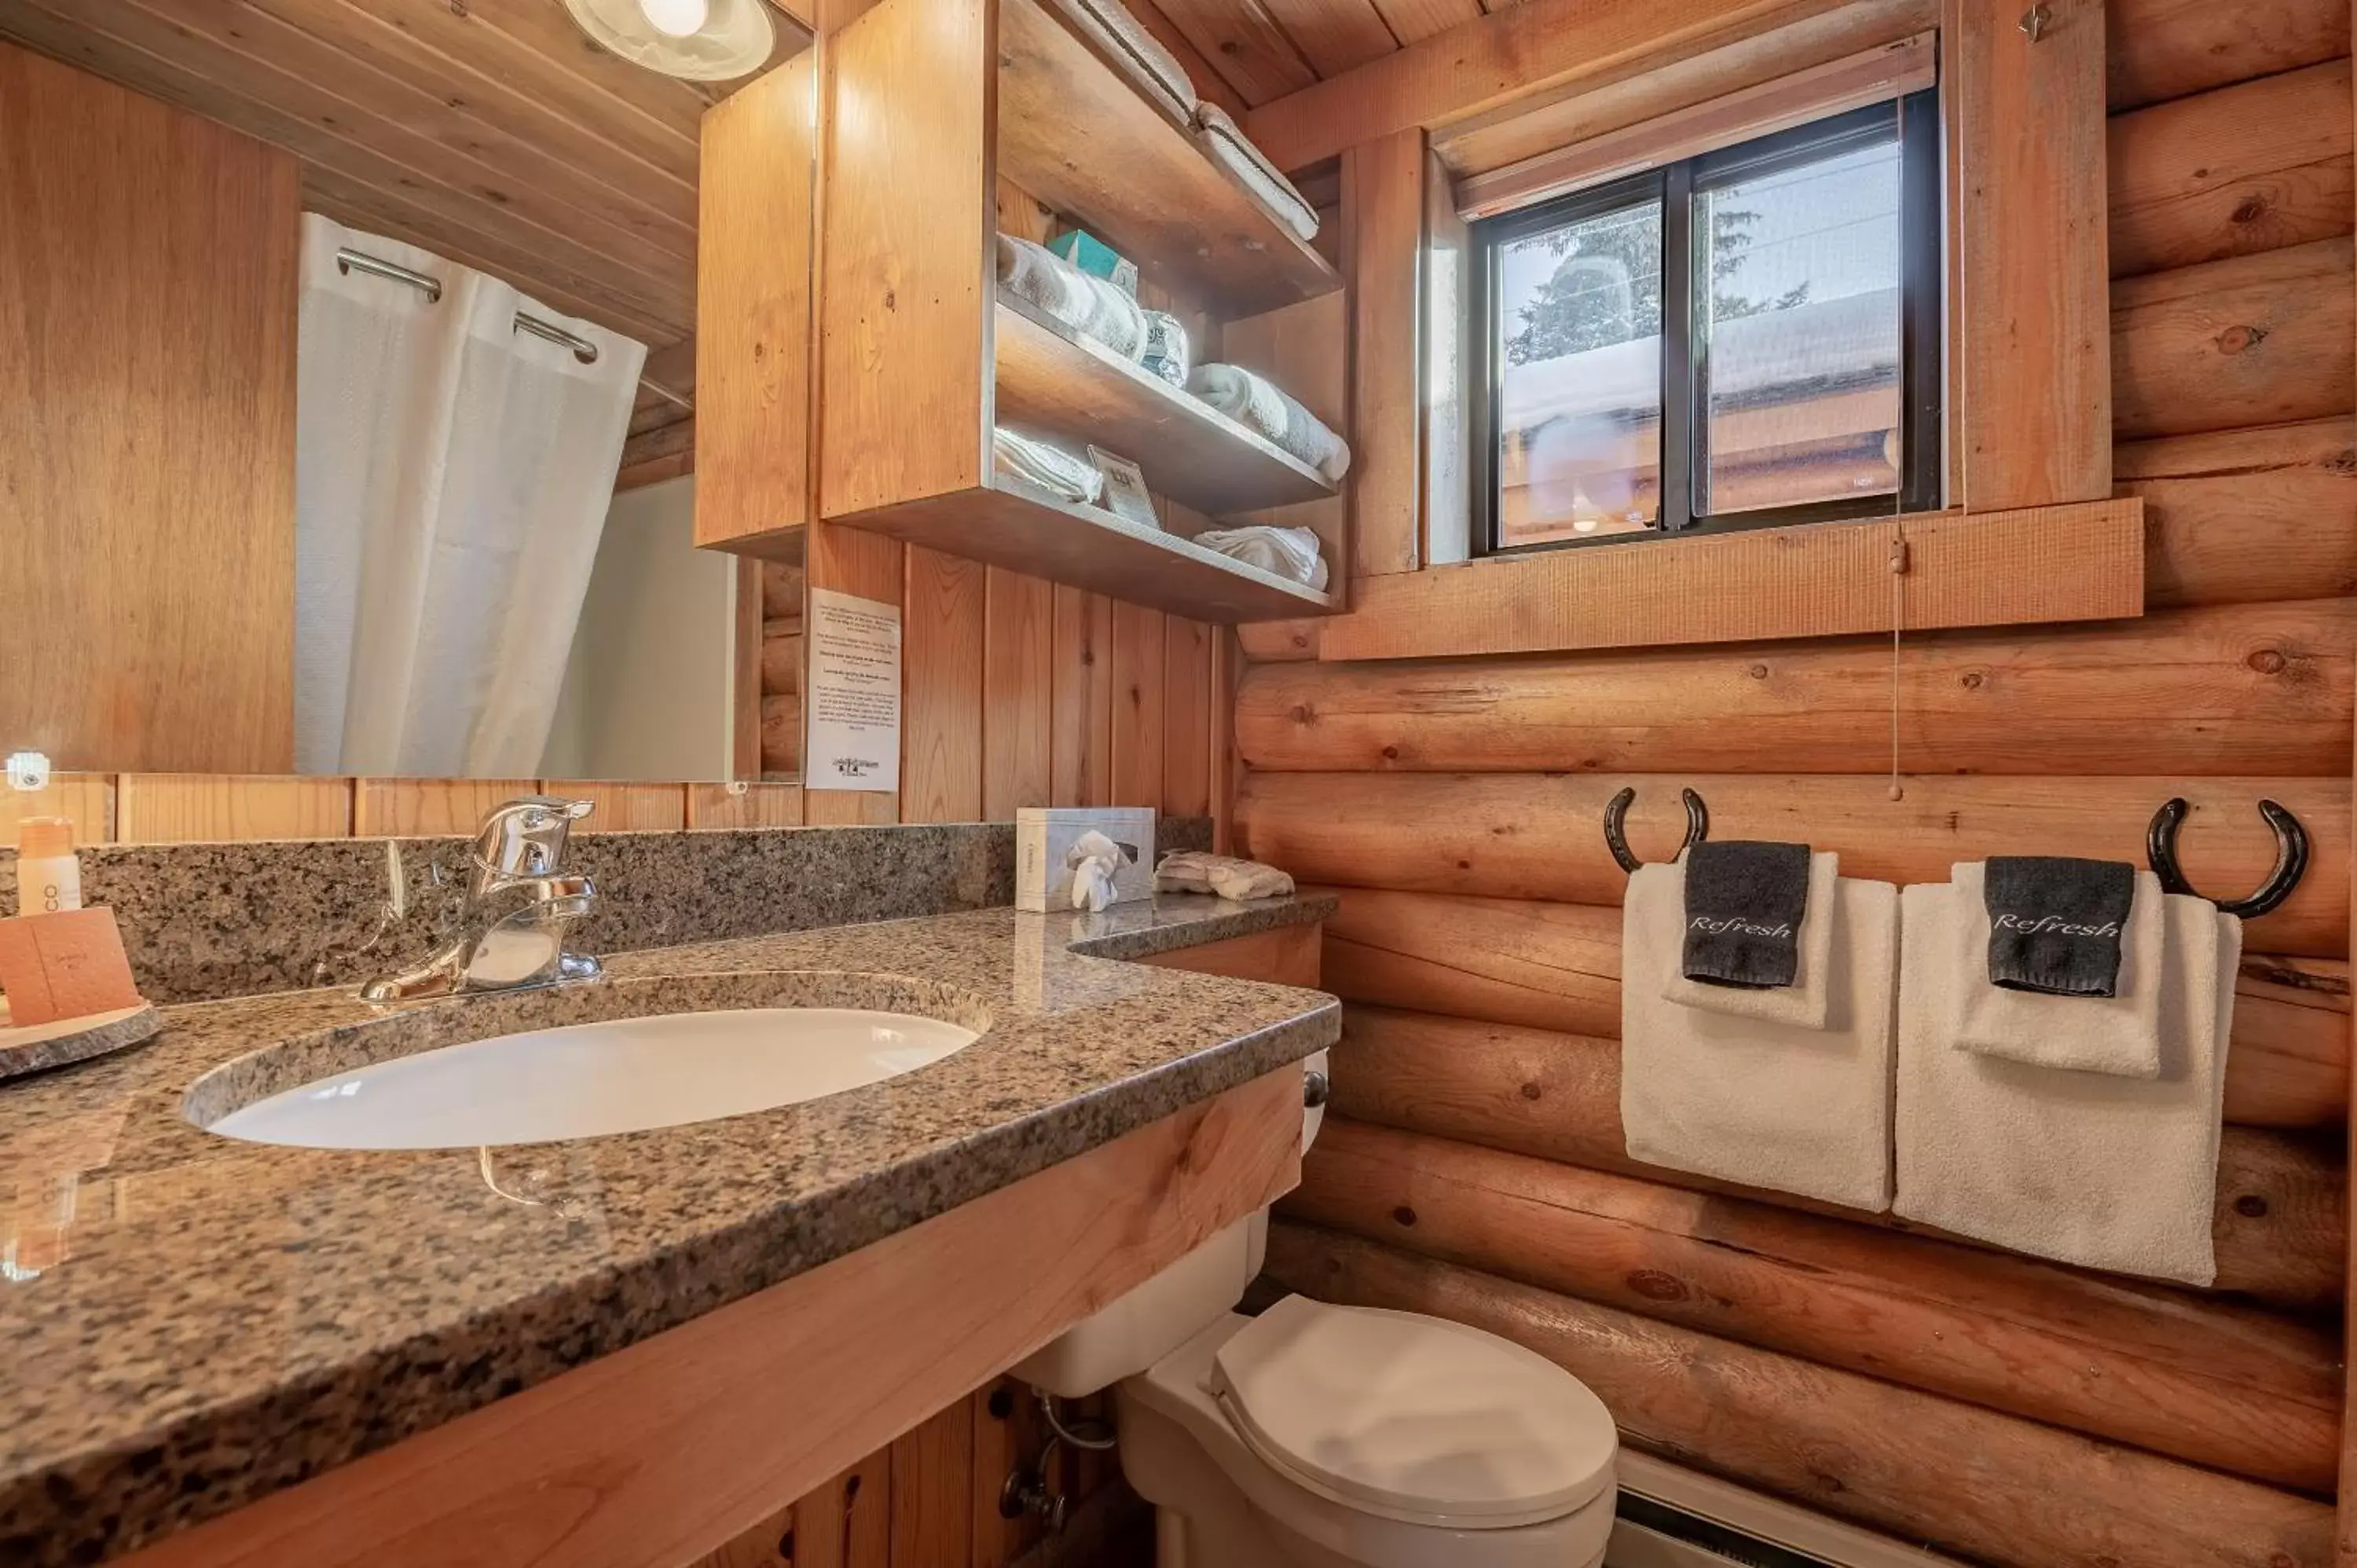 Toilet, Bathroom in Cowboy Village Resort